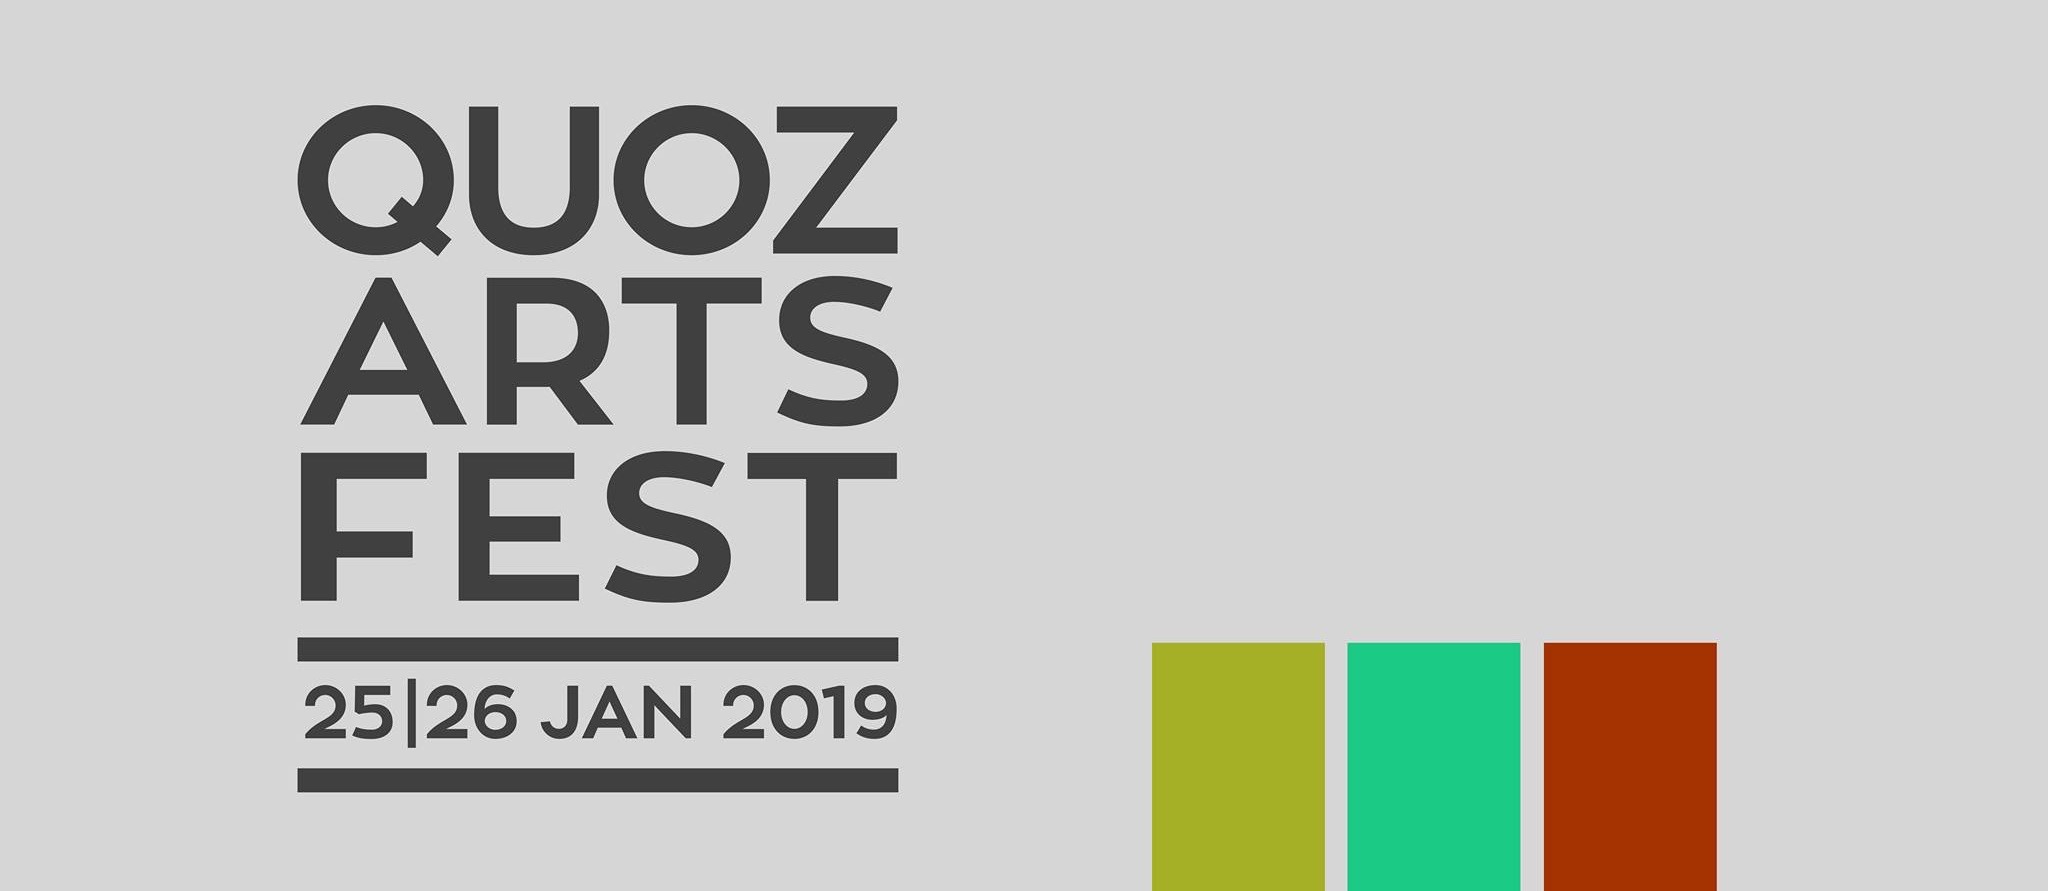 Quoz Arts Fest 2019 - Coming Soon in UAE